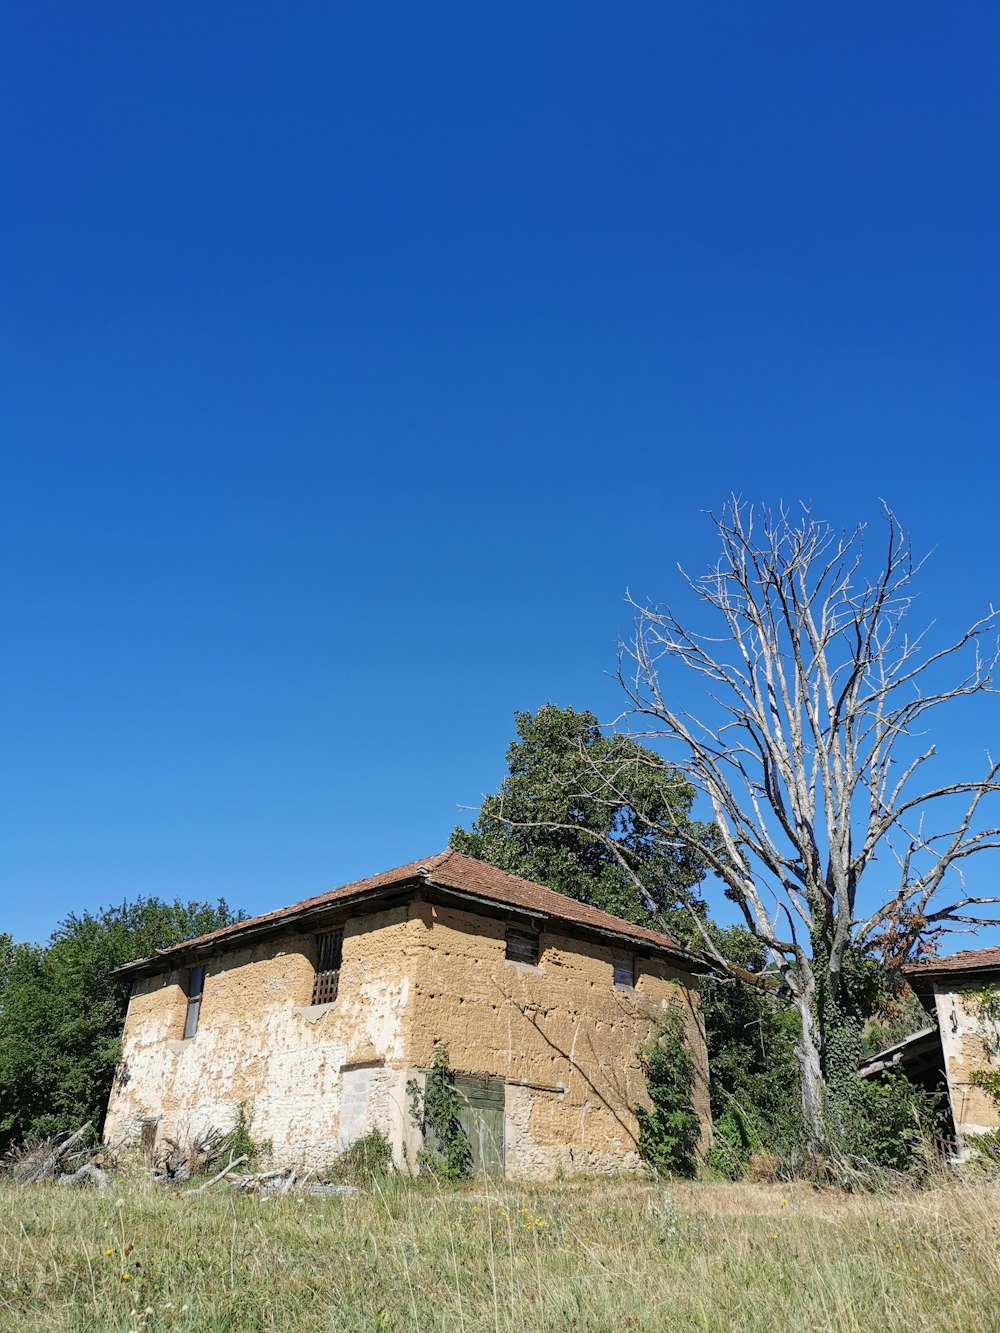 kahler Baum in der Nähe von braunem Betongebäude unter blauem Himmel tagsüber